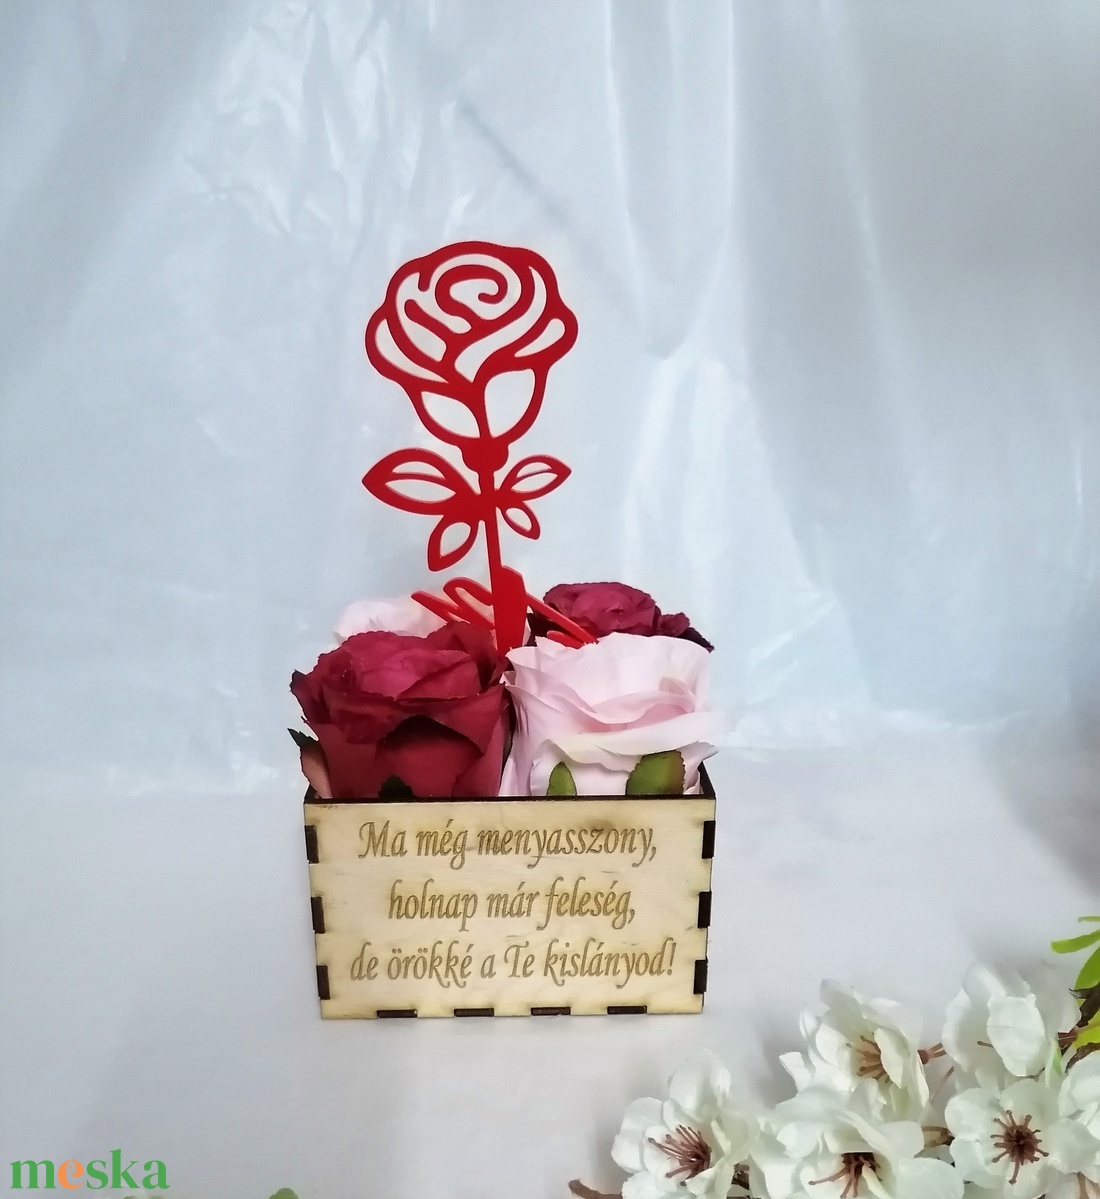 Virágbox 4 nagyfejű selyemrózsa és plexi rózsa  Édesanyáknak, Nagymamáknak, testvérnek és minden kedves nő szeretteidnek - esküvő - emlék & ajándék - szülőköszöntő ajándék - Meska.hu